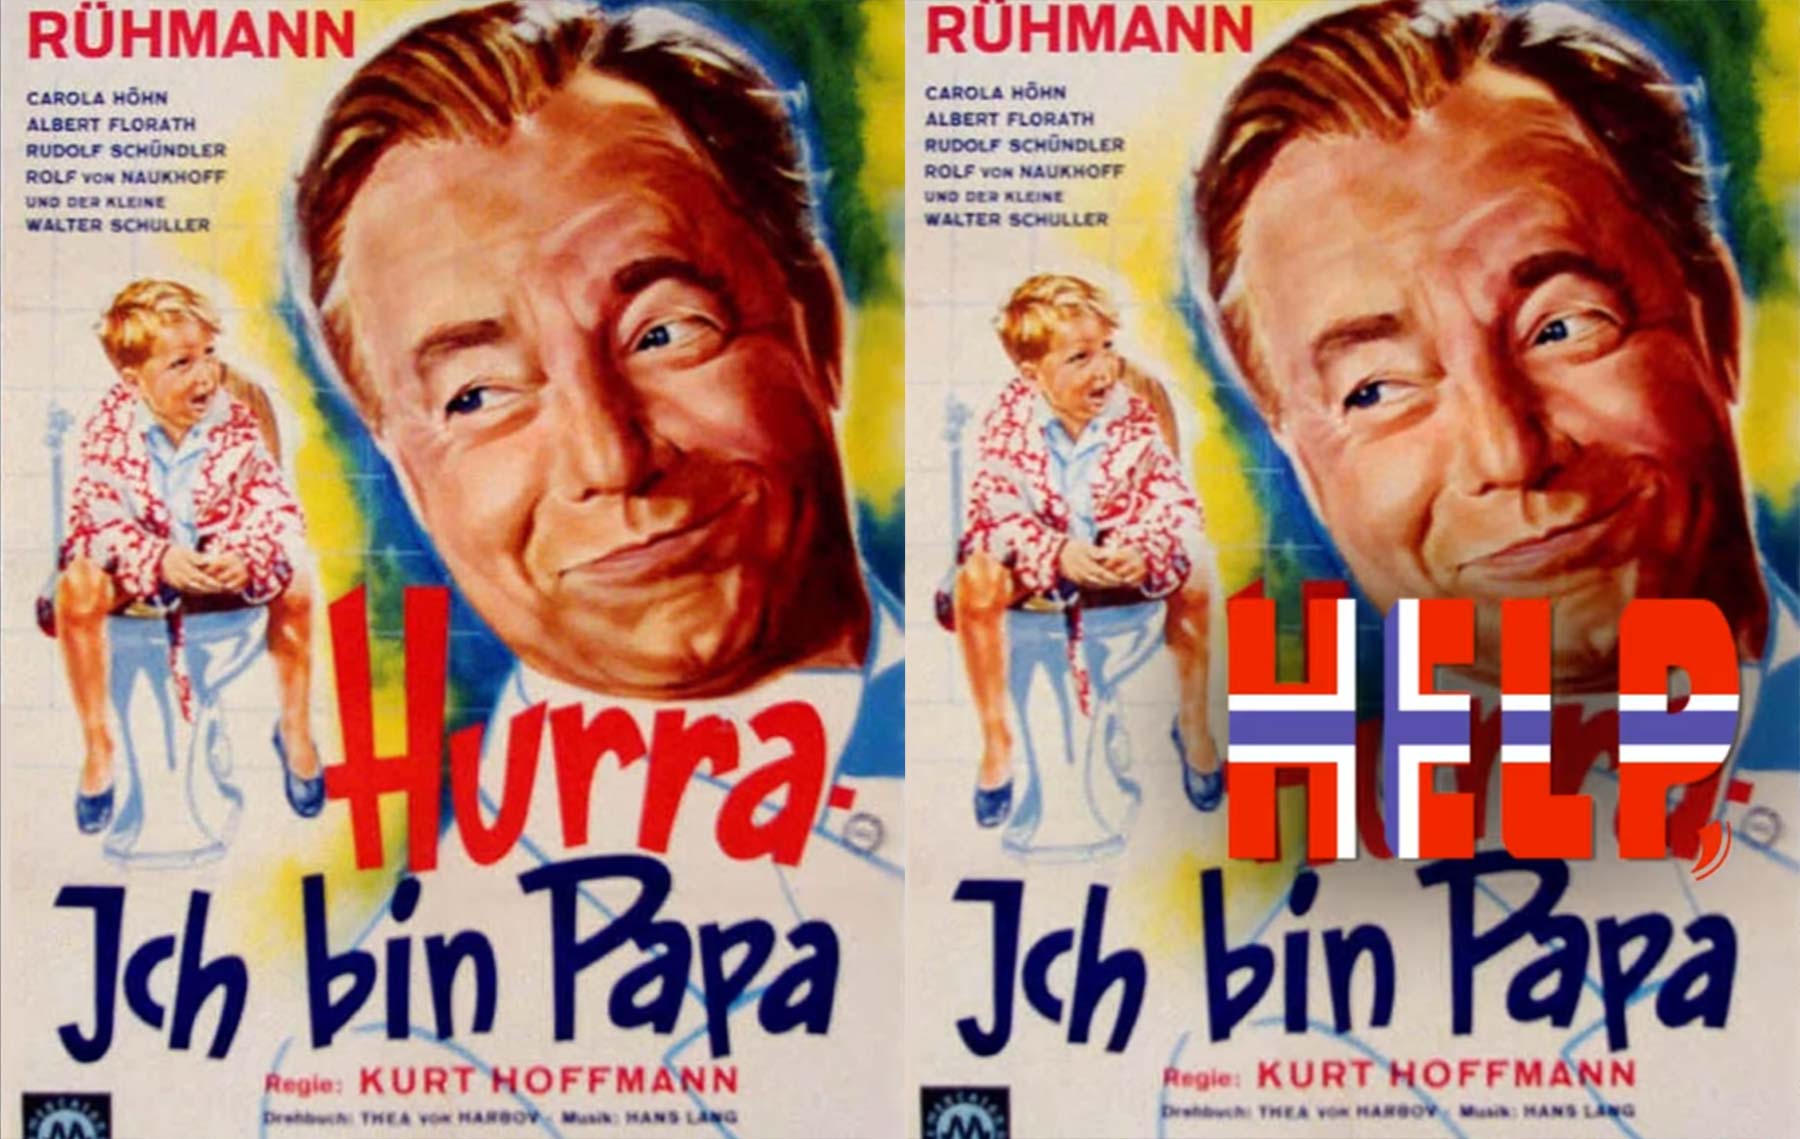 Hilfe, norwegische Filmtitel-Übersetzungen sind kurios!